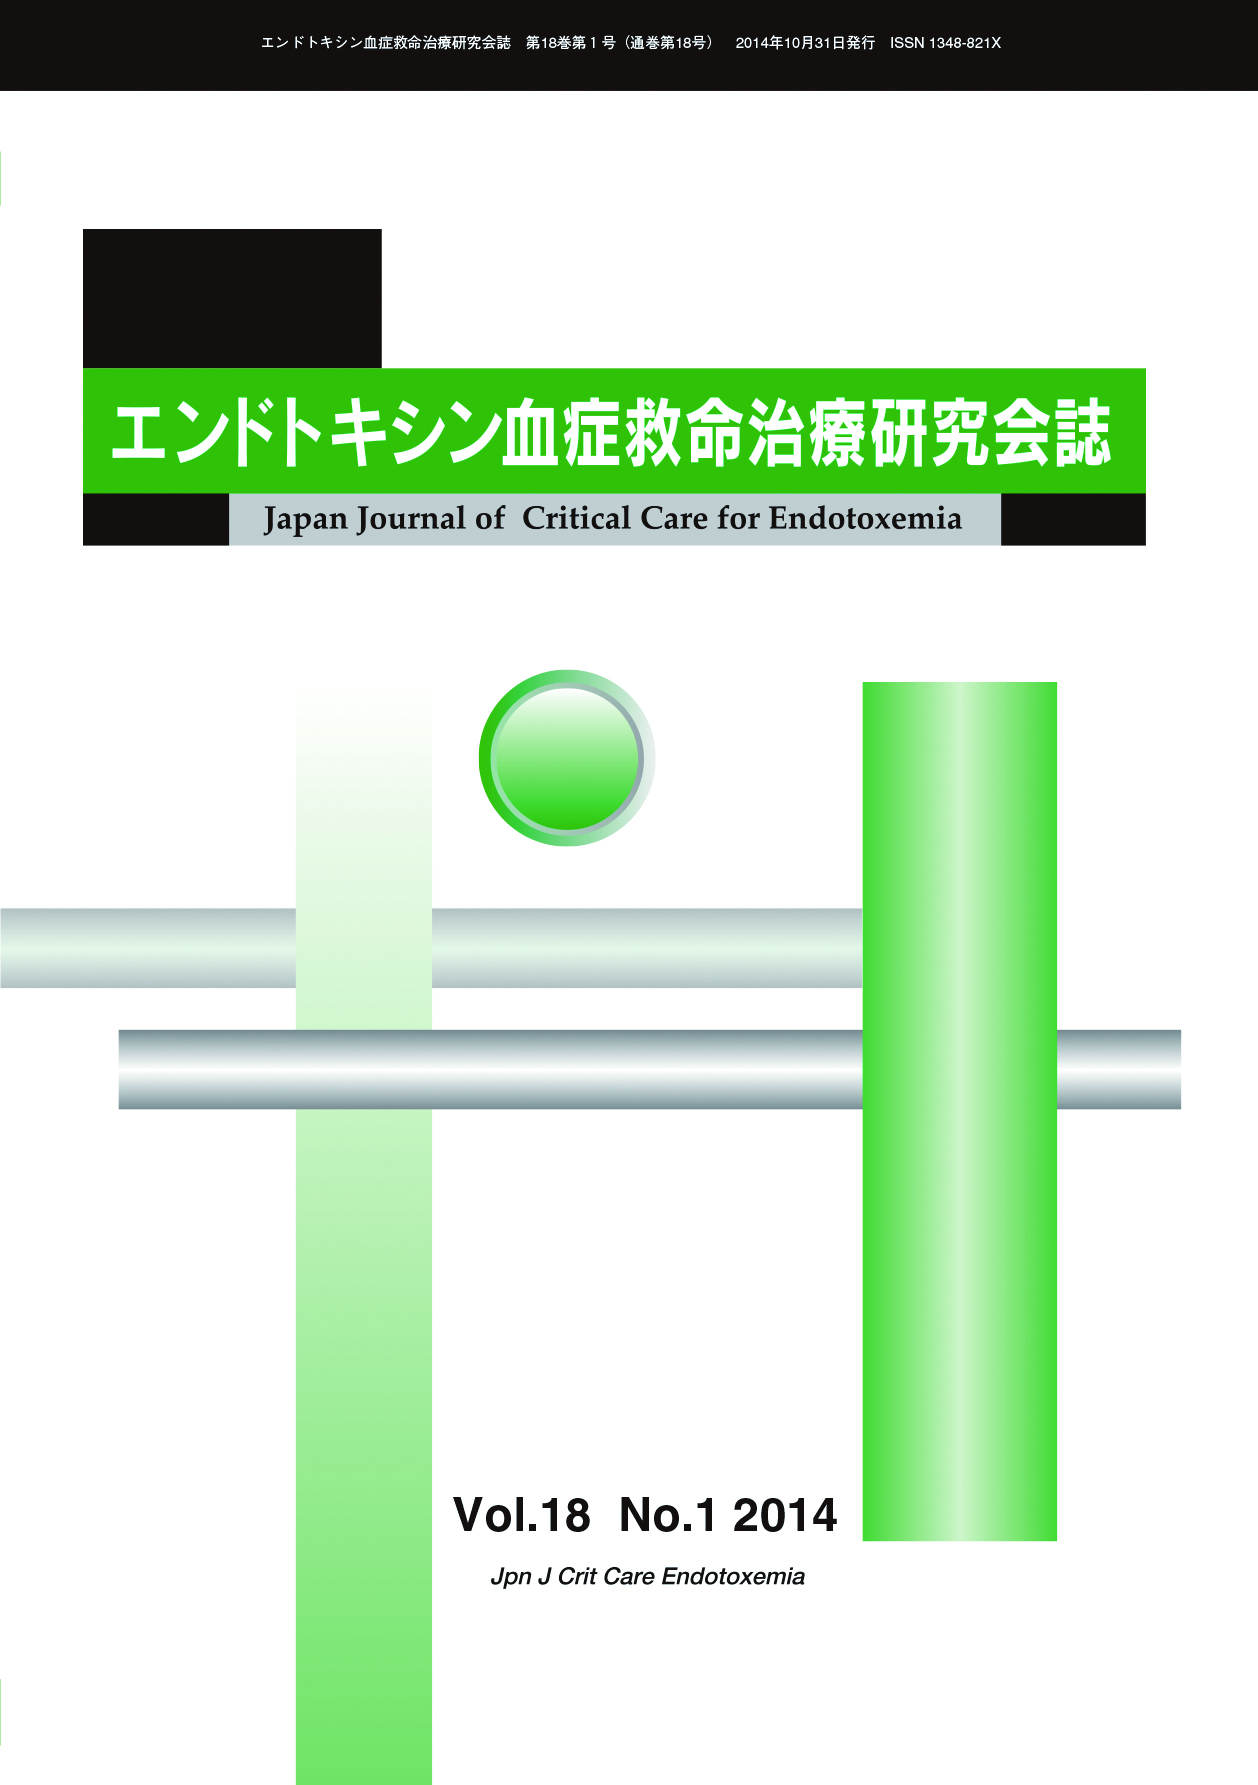 エンドトキシン血症救命治療研究会誌 Vol.18 No.1 2014